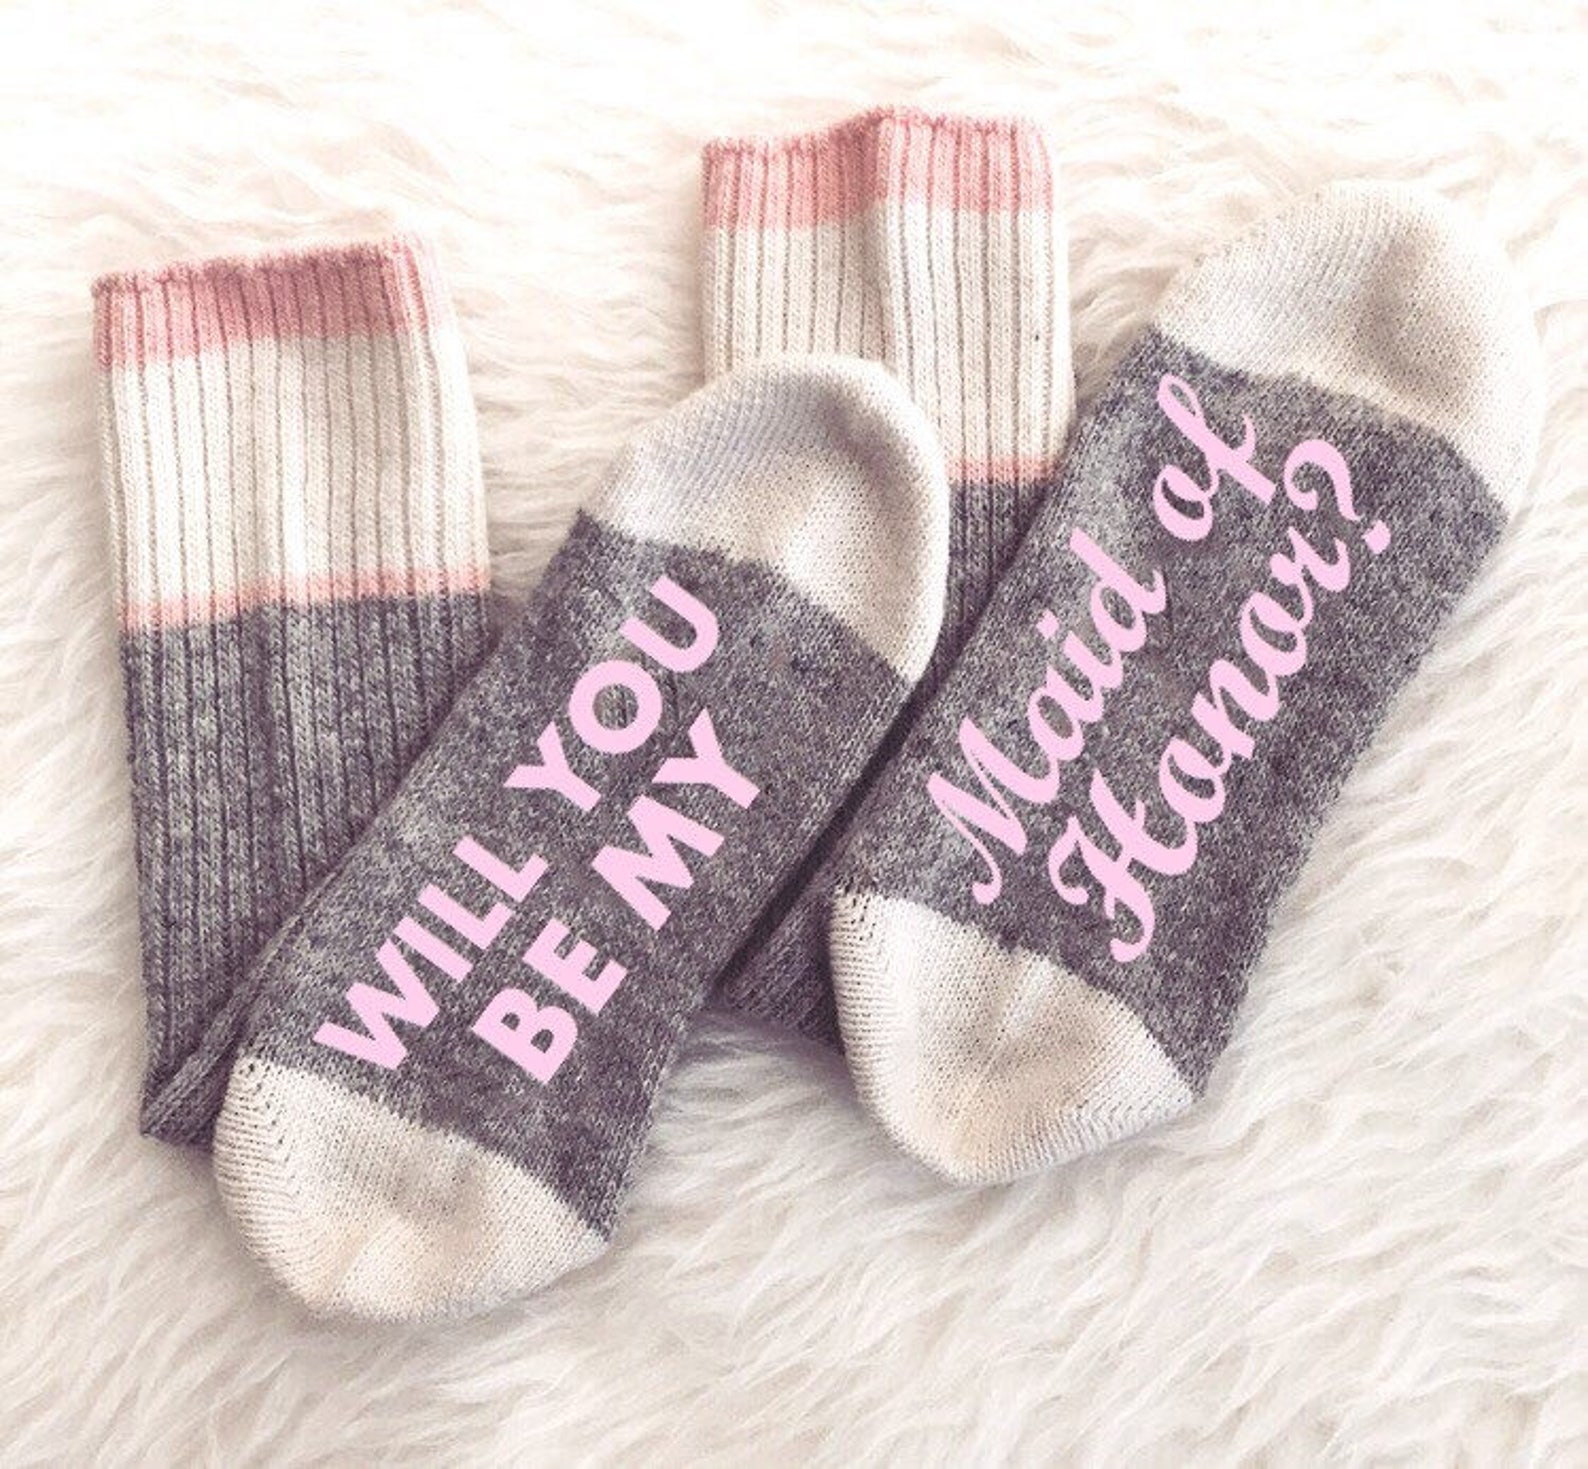 Носочки подруги. Носки для подруги. Парные носки для подруг. Подружка носки. Милые носки с подругой.